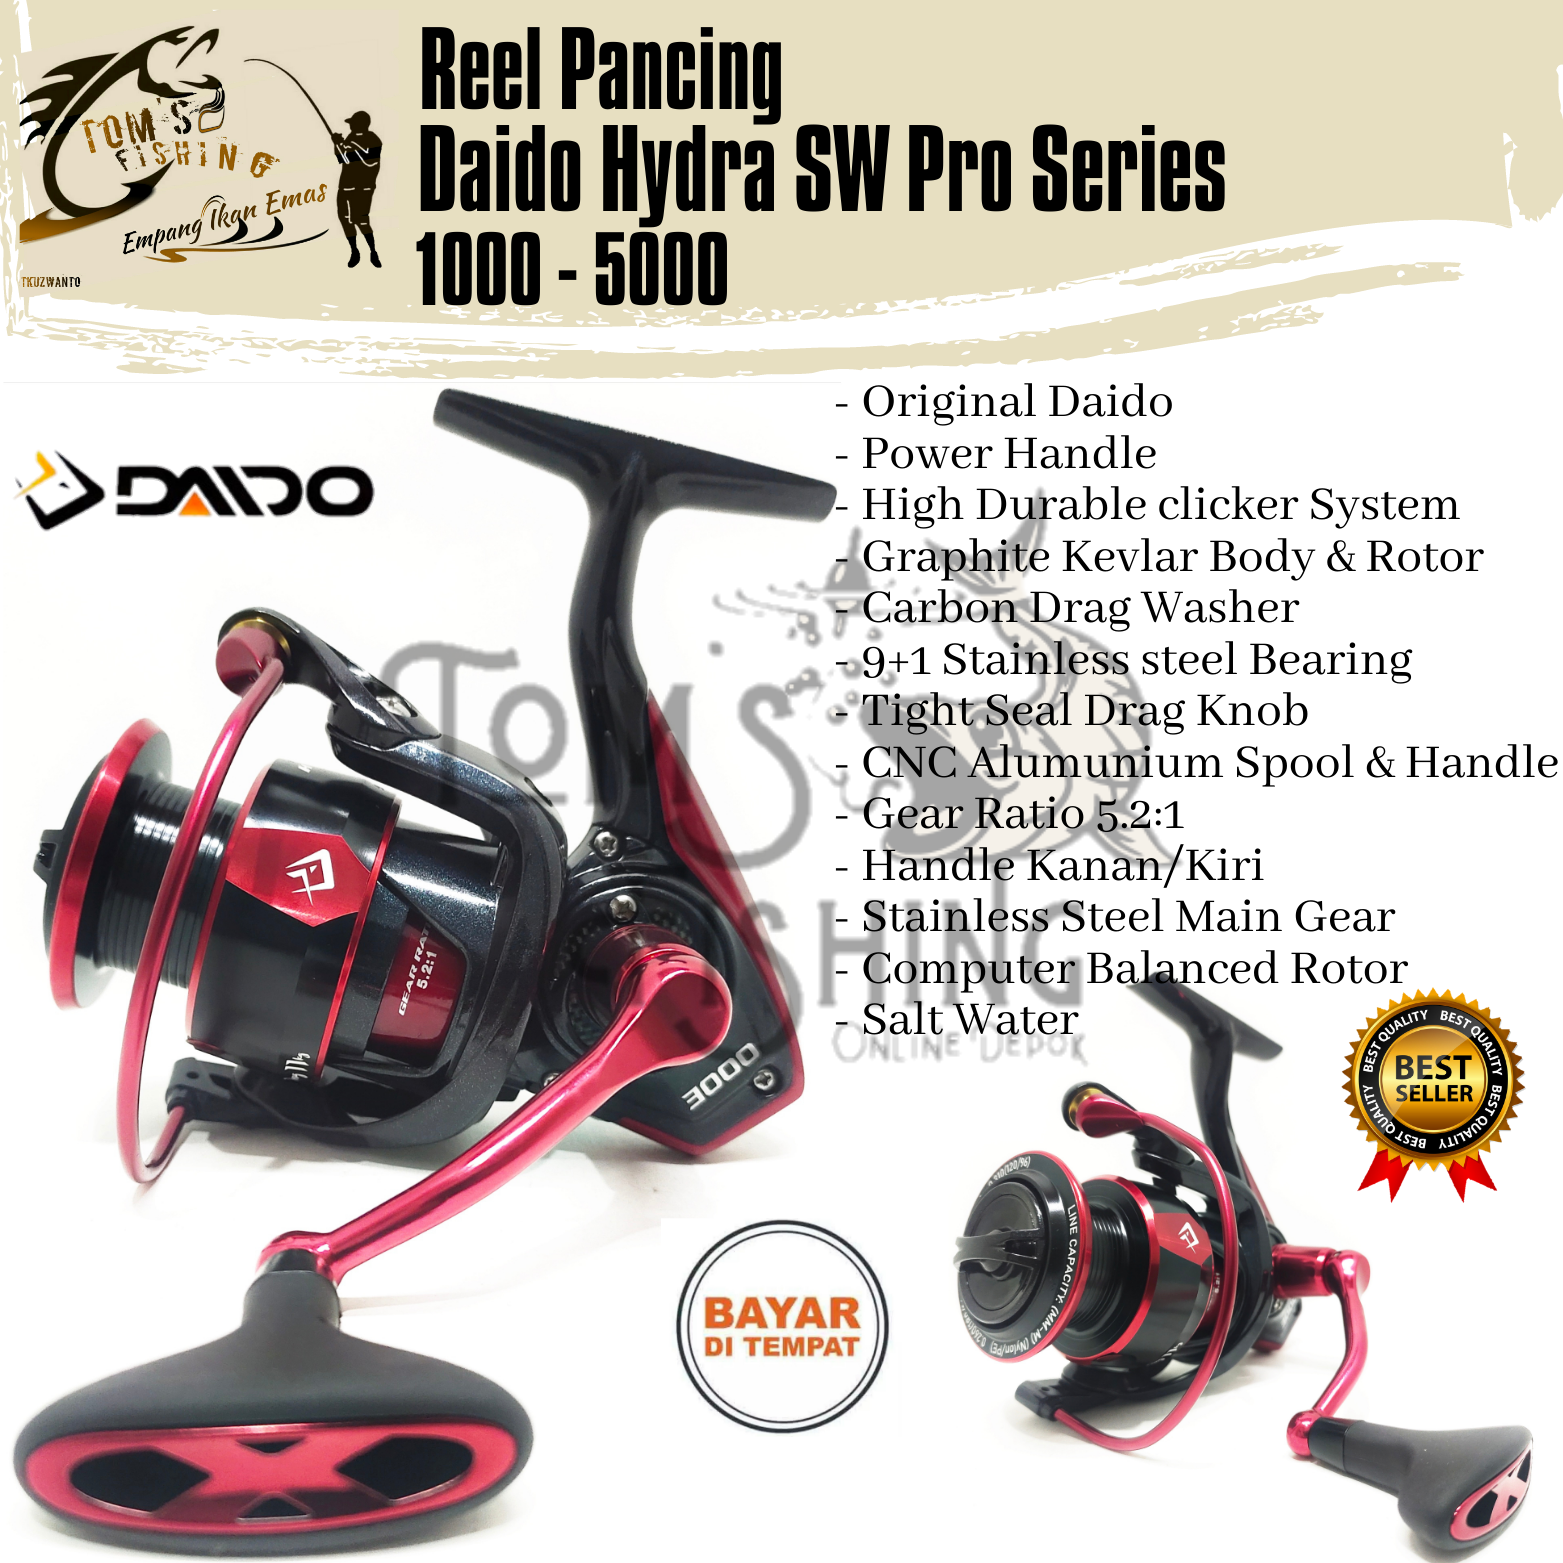 Reel Pancing Daido Hydra SW Pro Series 1000 - 5000 (9+1Bearing